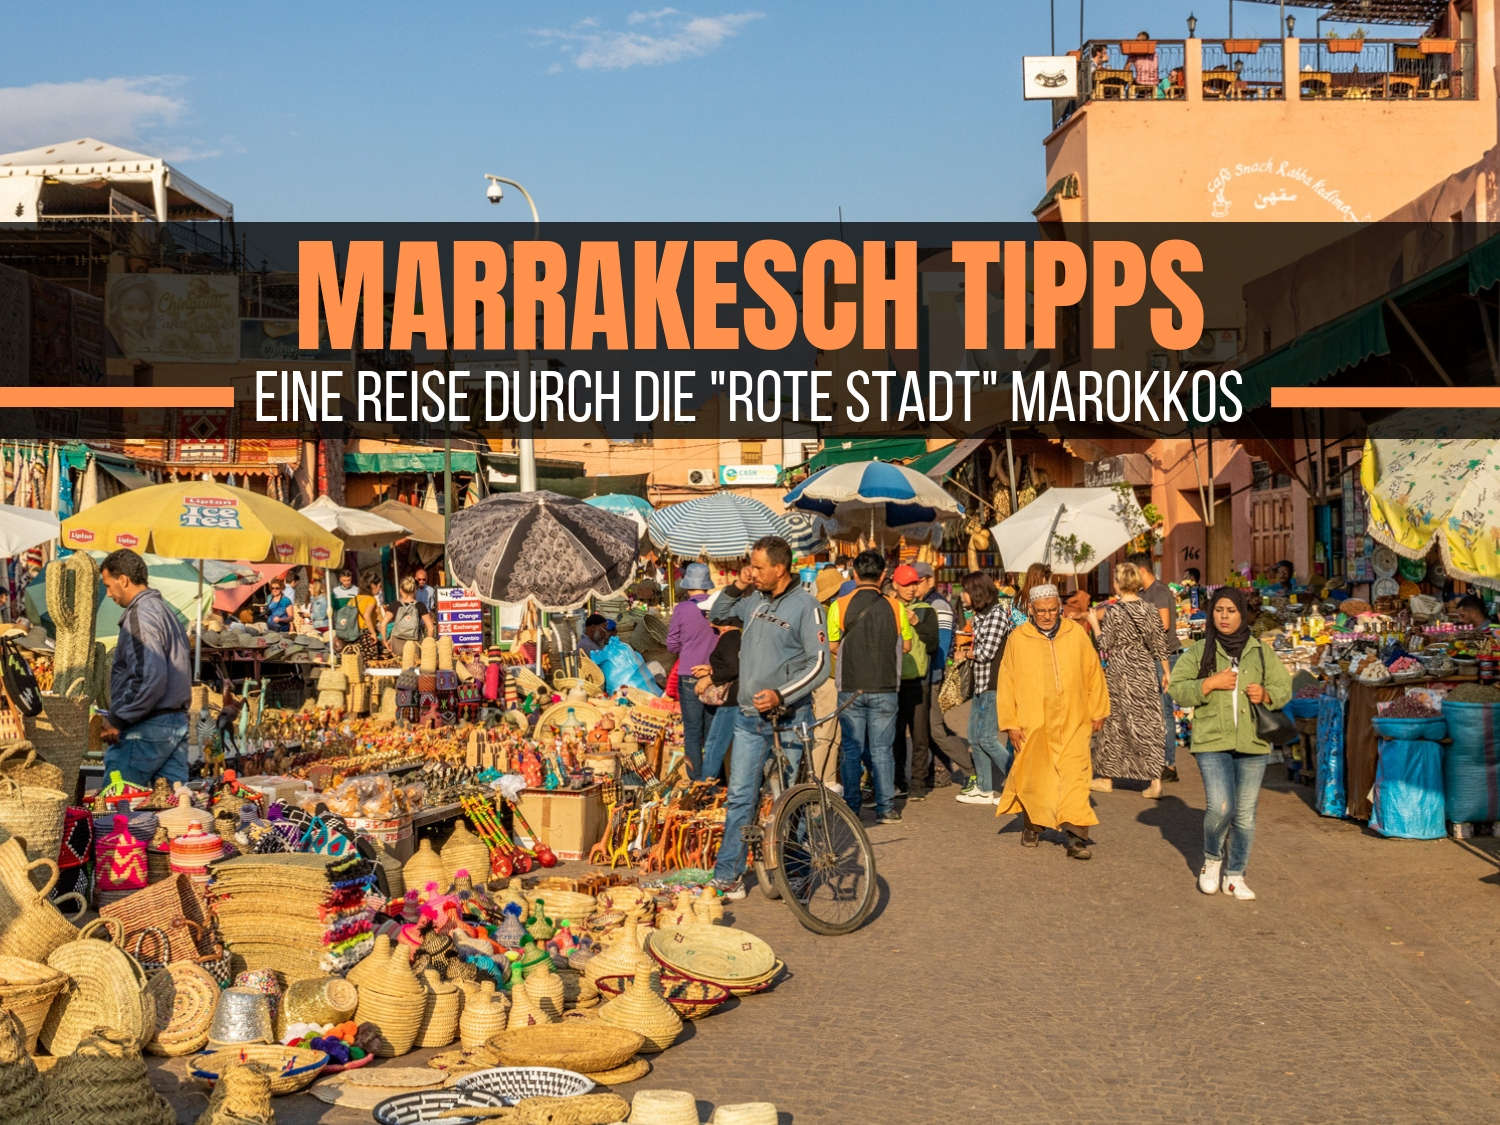 Marrakesch Tipps